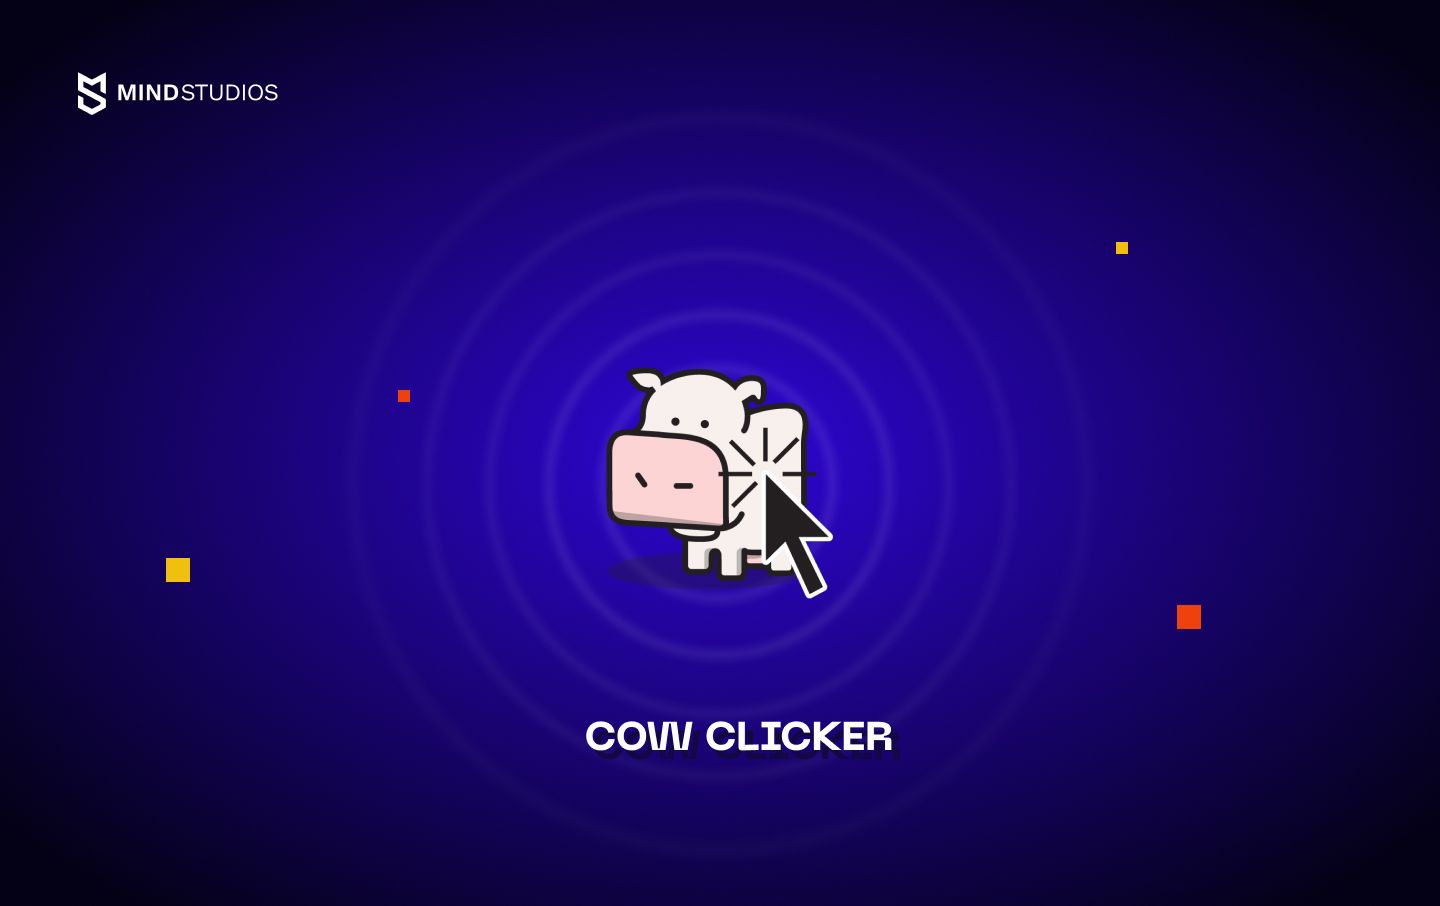 Cow clicker